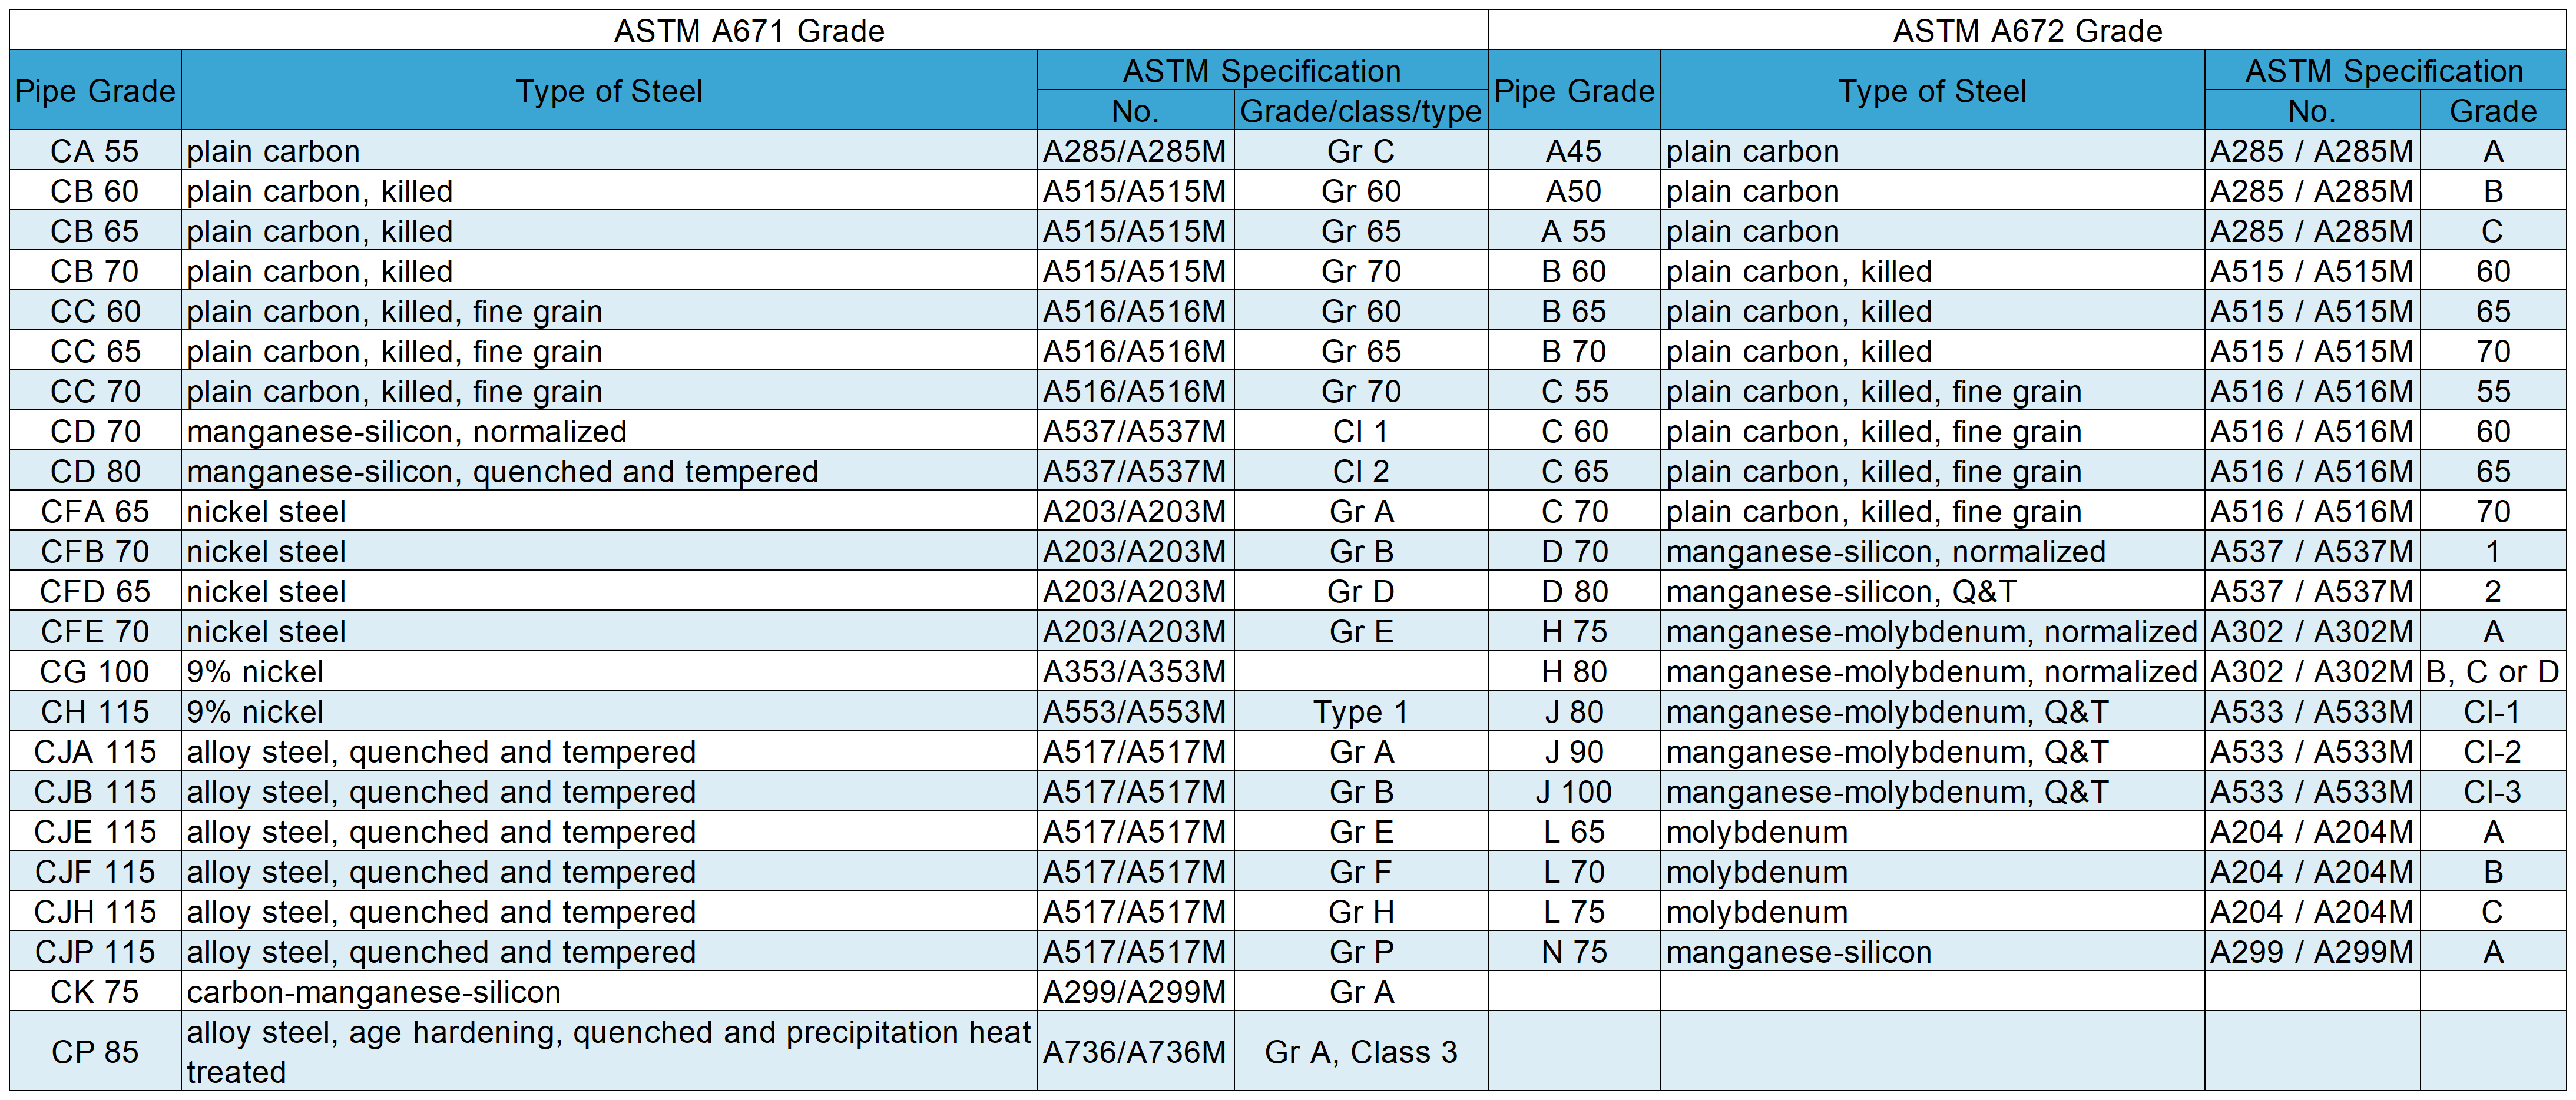 az astm a671 különbözik az a672: fokozattól